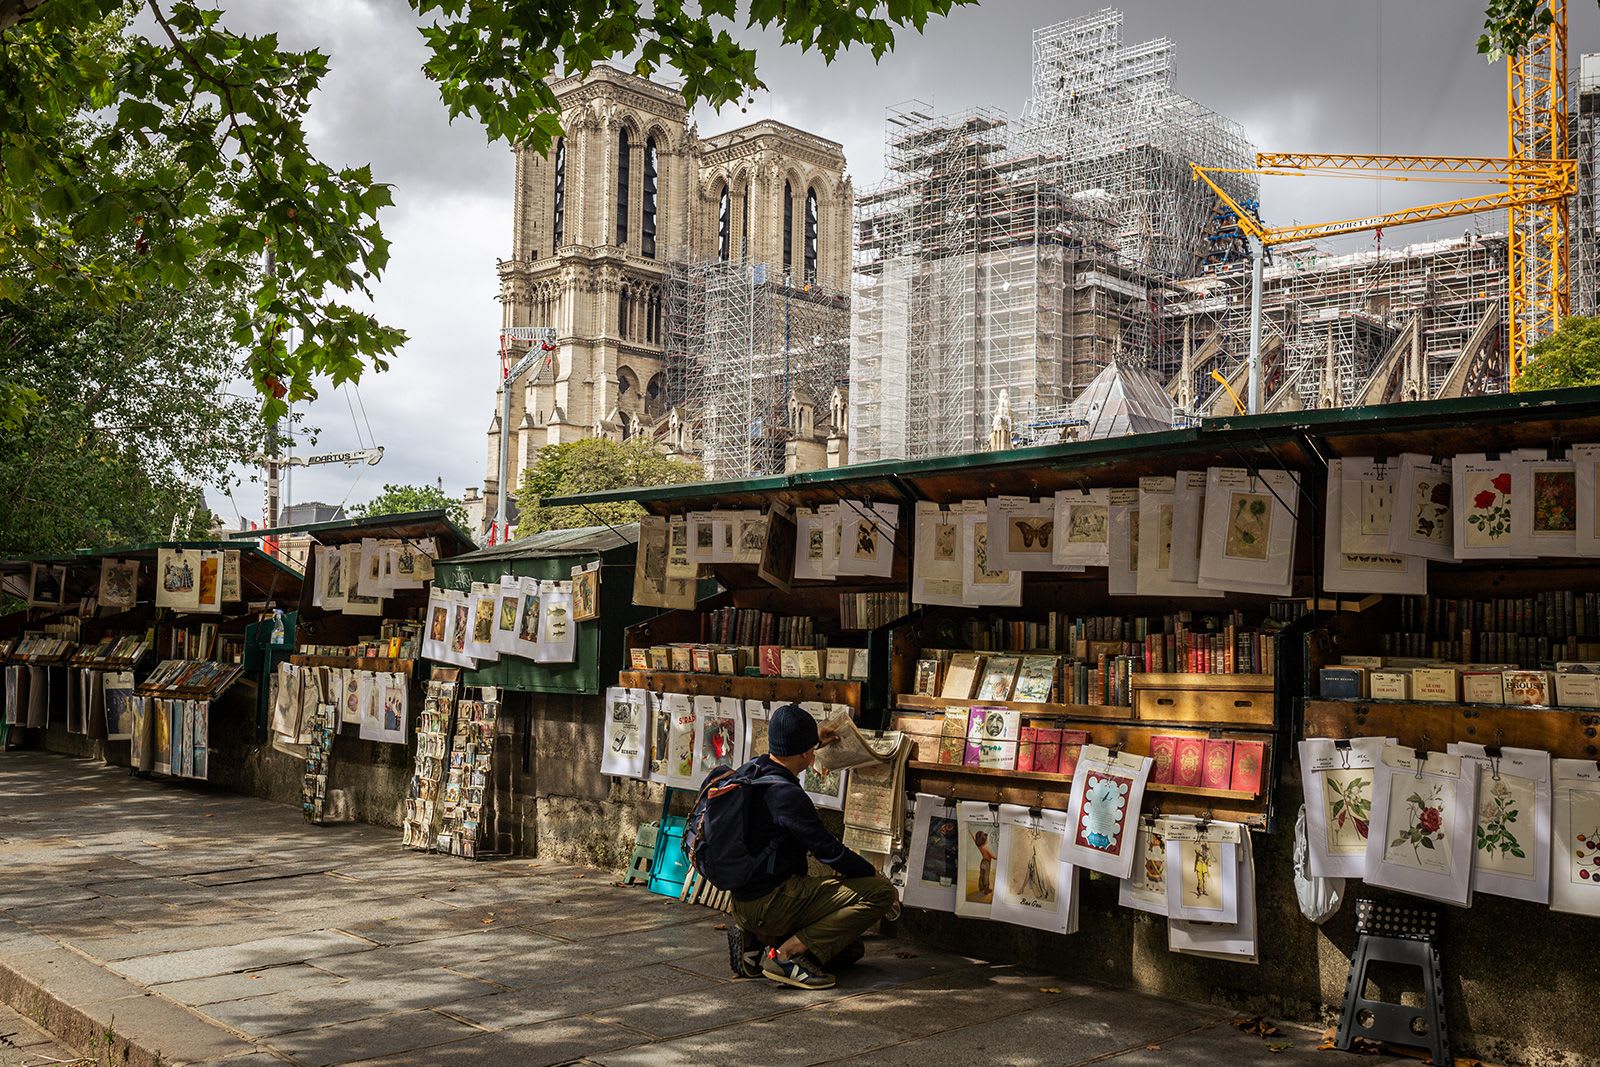 أخذ سوق الكتب في باريس محلّه هنا منذ 450 عامًا ولكنه يُنقل الآن "لأسباب أمنية"